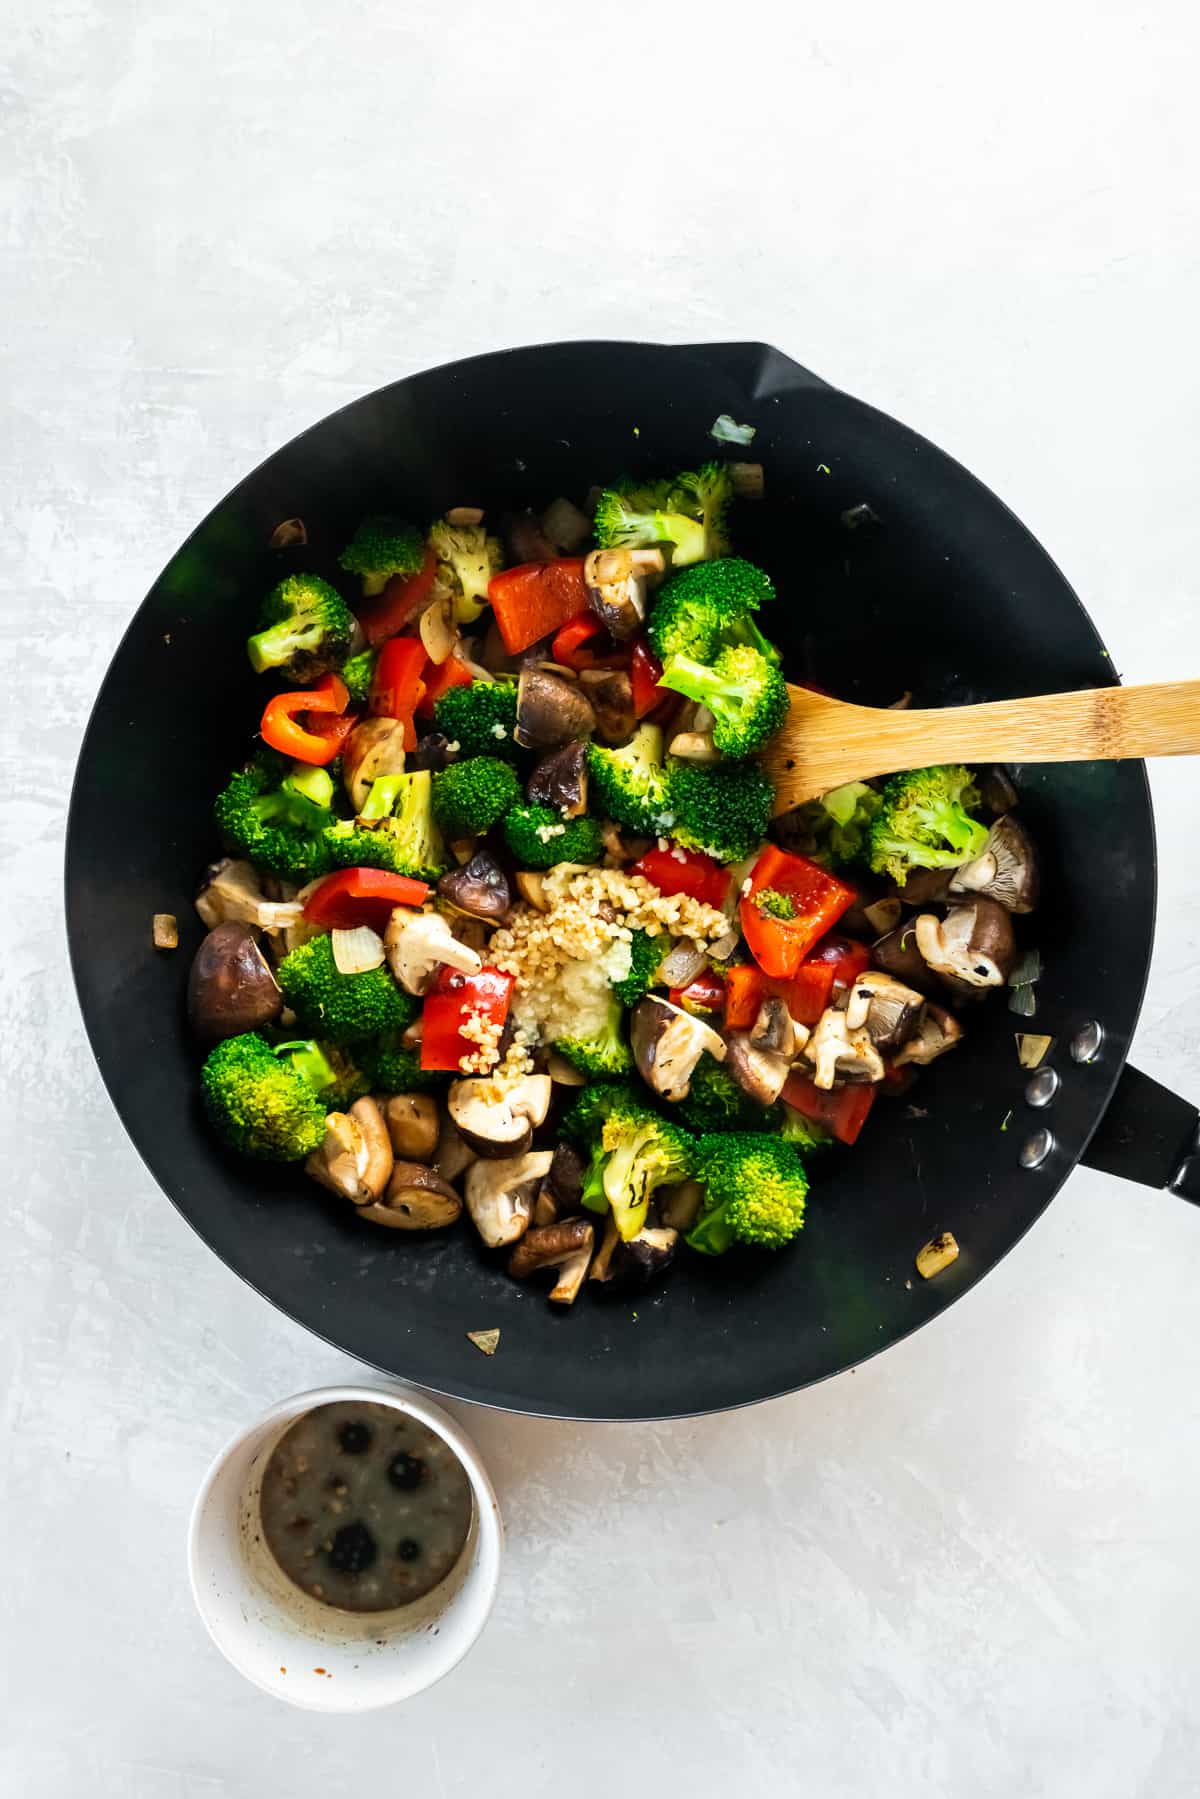 Broccoli mushroom stir fry in a wok with a wooden spoon.